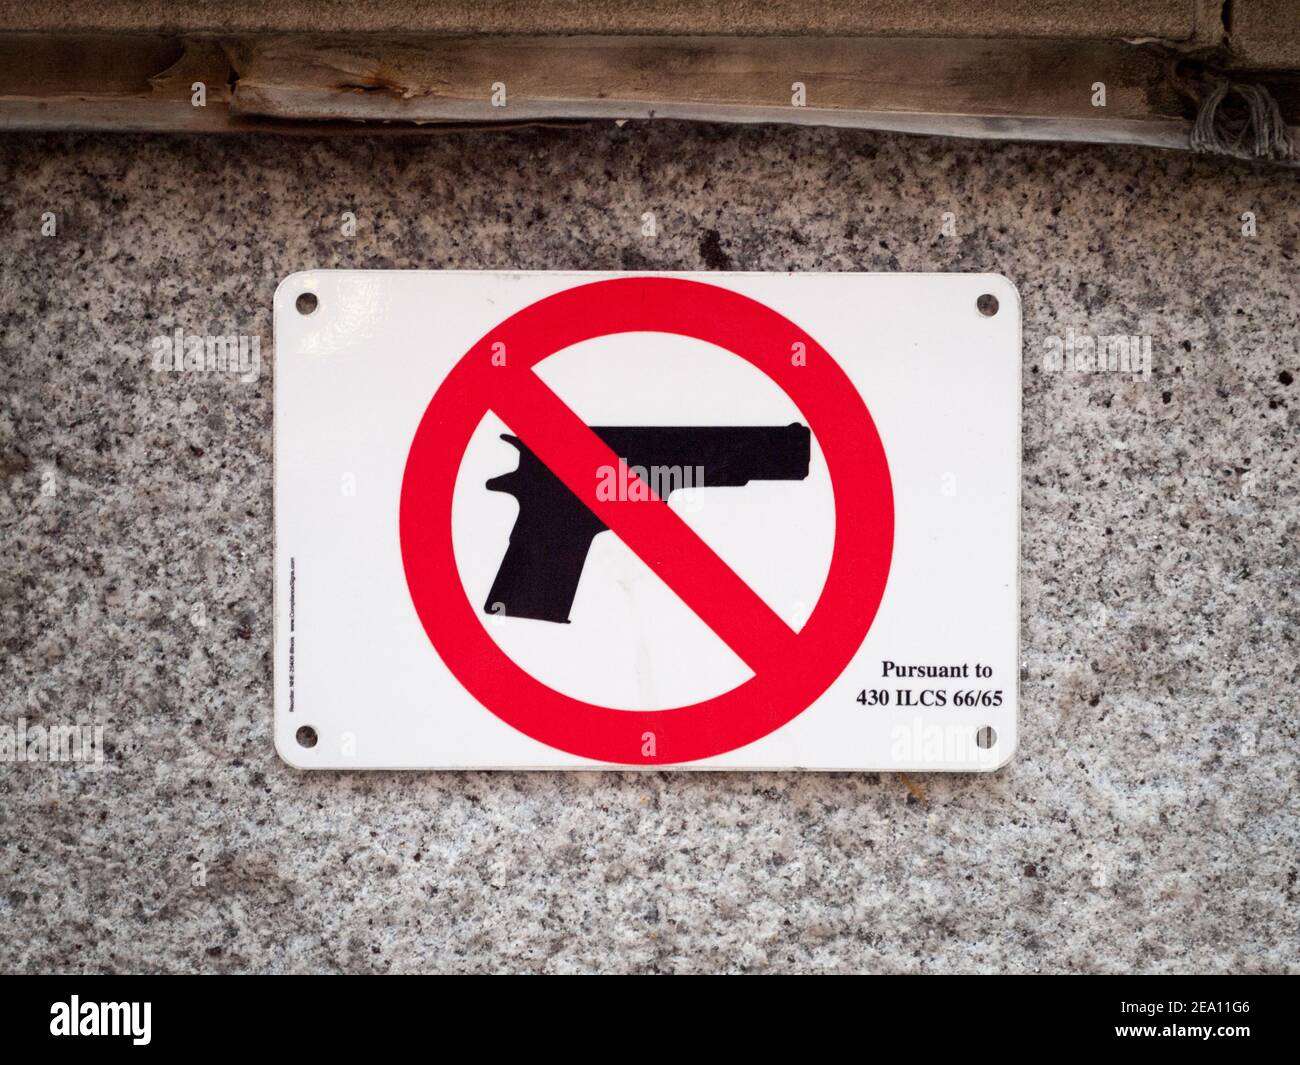 Un panneau officiel de la politique de l'État de l'Illinois interdit le port d'armes à feu. Chicago, Illinois. (Armes à feu interdites, armes à feu non autorisées, contrôle des armes à feu). Banque D'Images